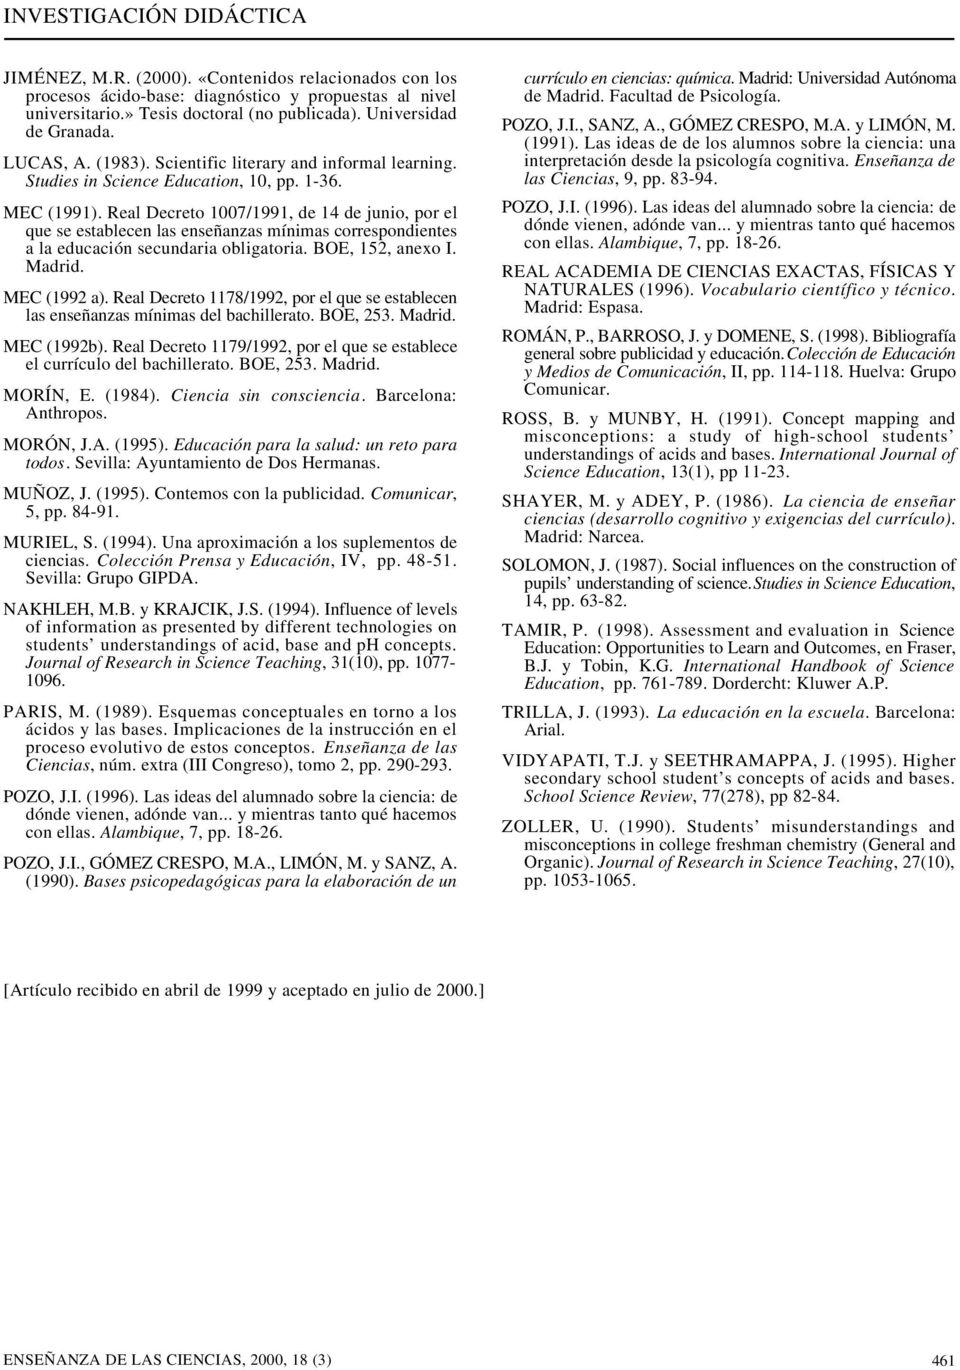 Real Decreto 1007/1991, de 14 de junio, por el que se establecen las enseñanzas mínimas correspondientes a la educación secundaria obligatoria. BOE, 152, anexo I. Madrid. MEC (1992 a).